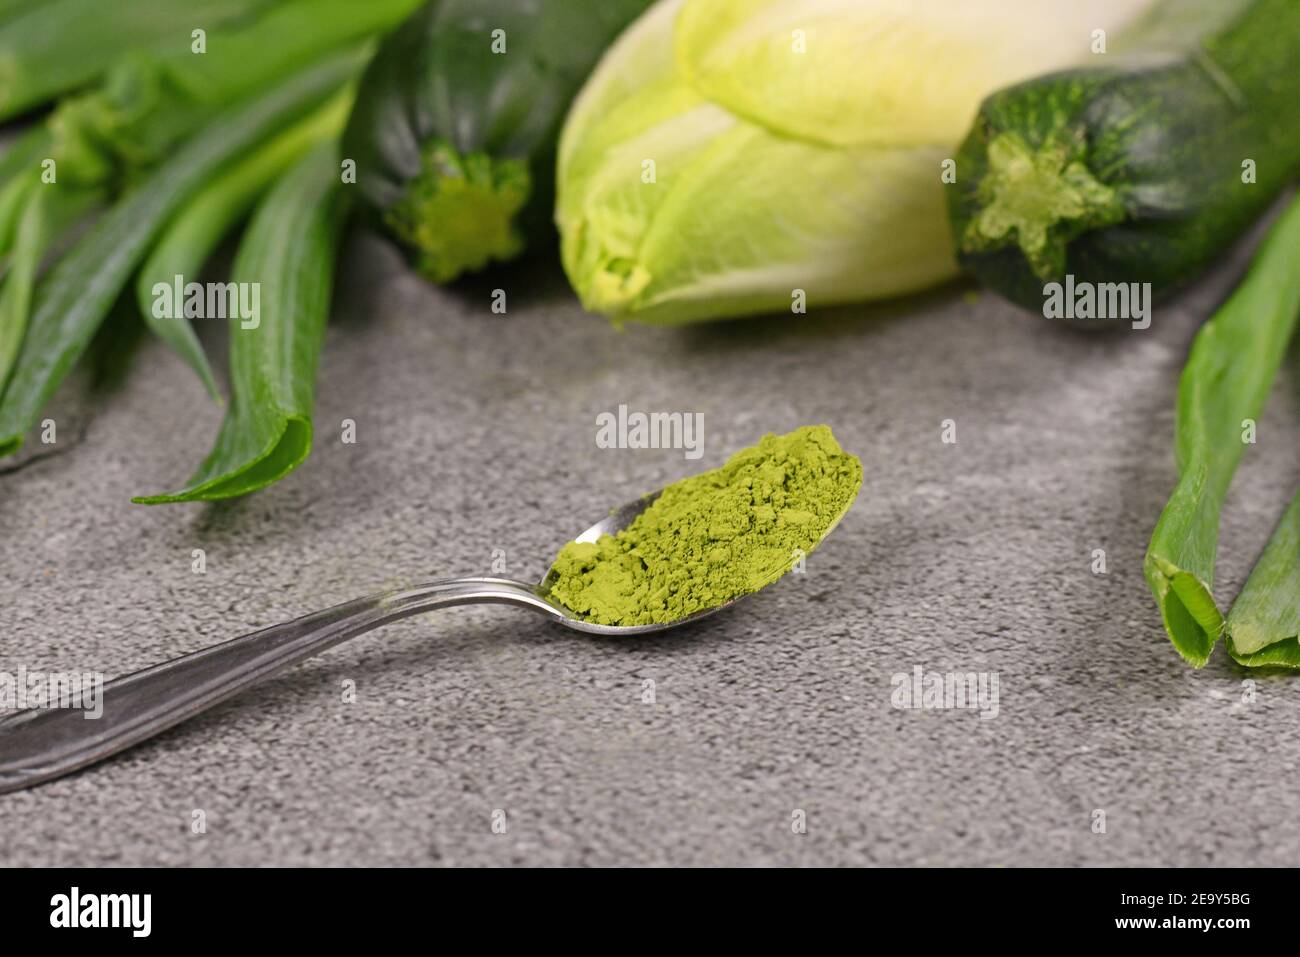 Polvo verde en la cuchara delante de verduras verdes crudas. Concepto de colorante natural de alimentos o suplementos hechos de verduras. Foto de stock